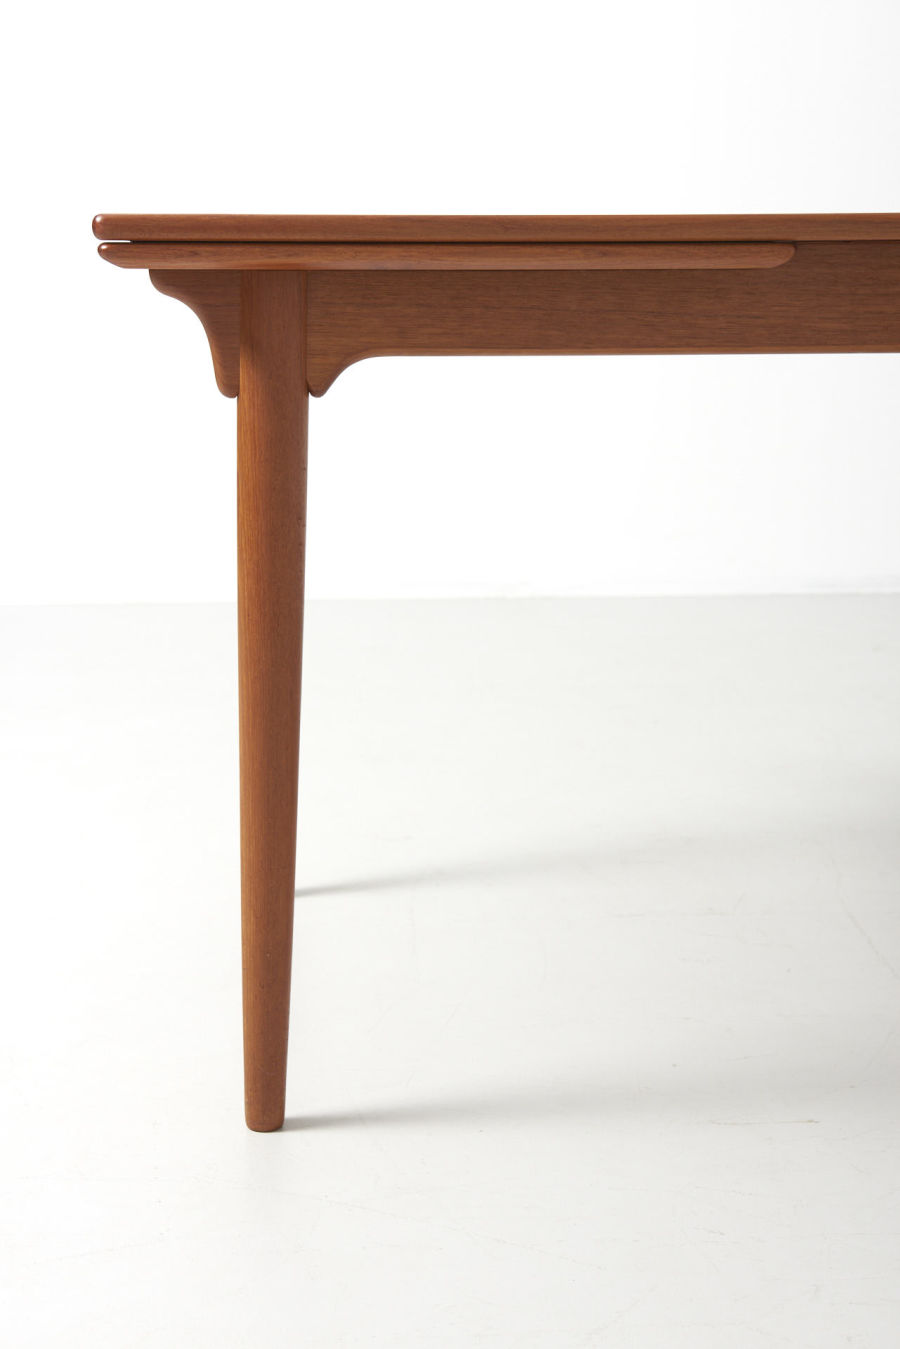 modestfurniture-vintage-2068-omann-jun-dining-table-model-5004